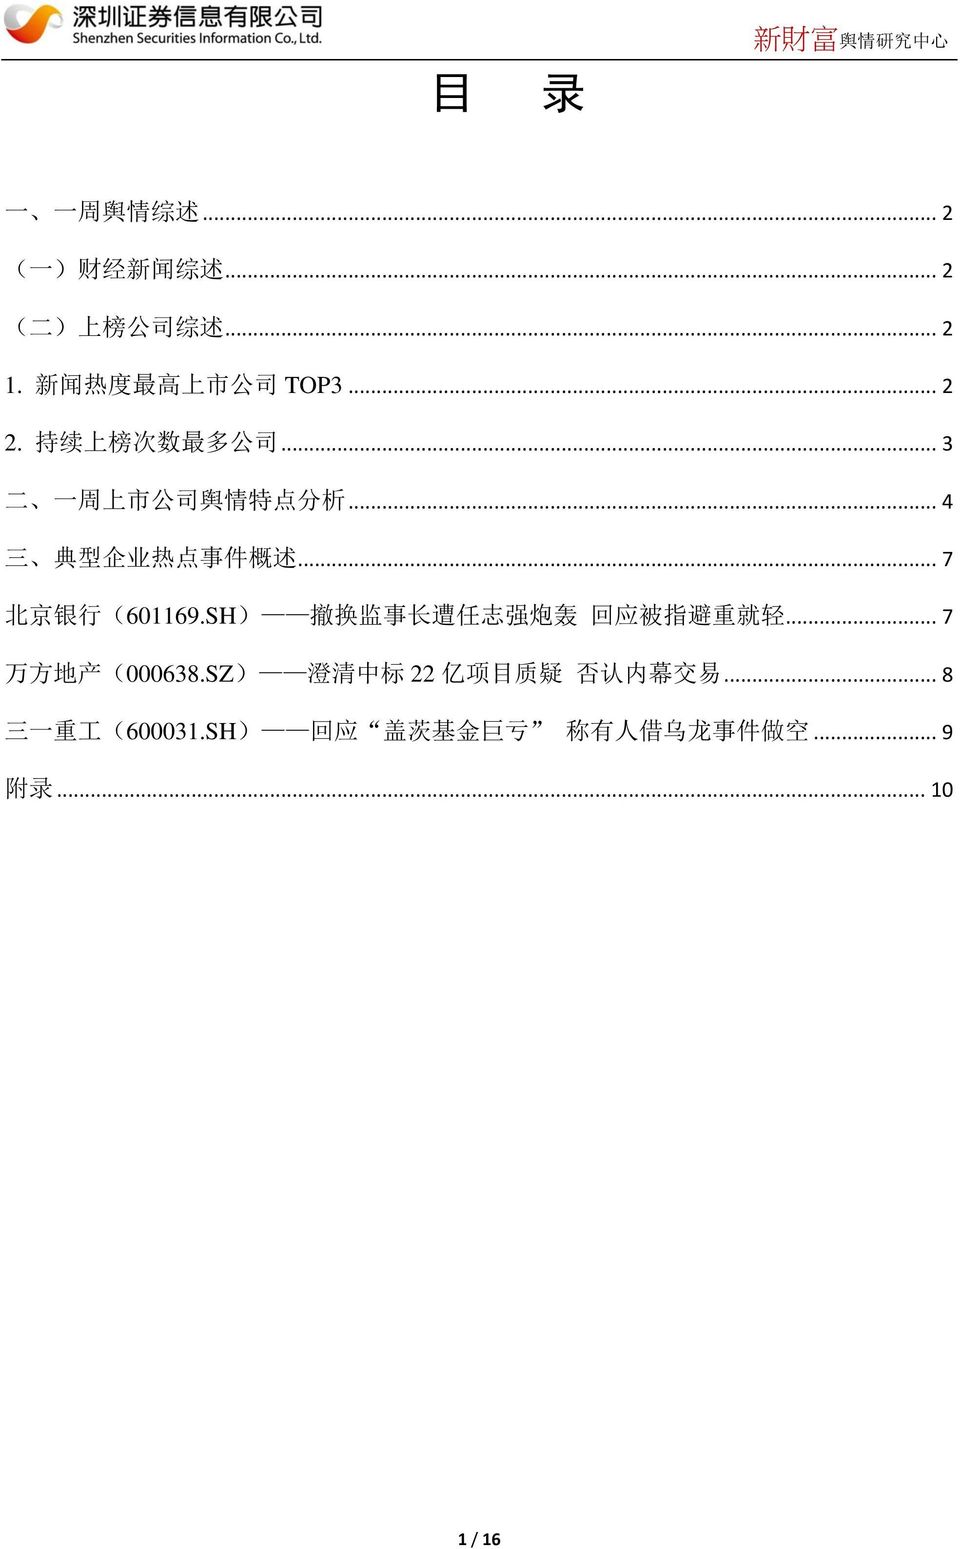 .. 4 三 典 型 企 业 热 点 事 件 概 述... 7 北 京 银 行 (601169.SH) 撤 换 监 事 长 遭 任 志 强 炮 轰 回 应 被 指 避 重 就 轻.